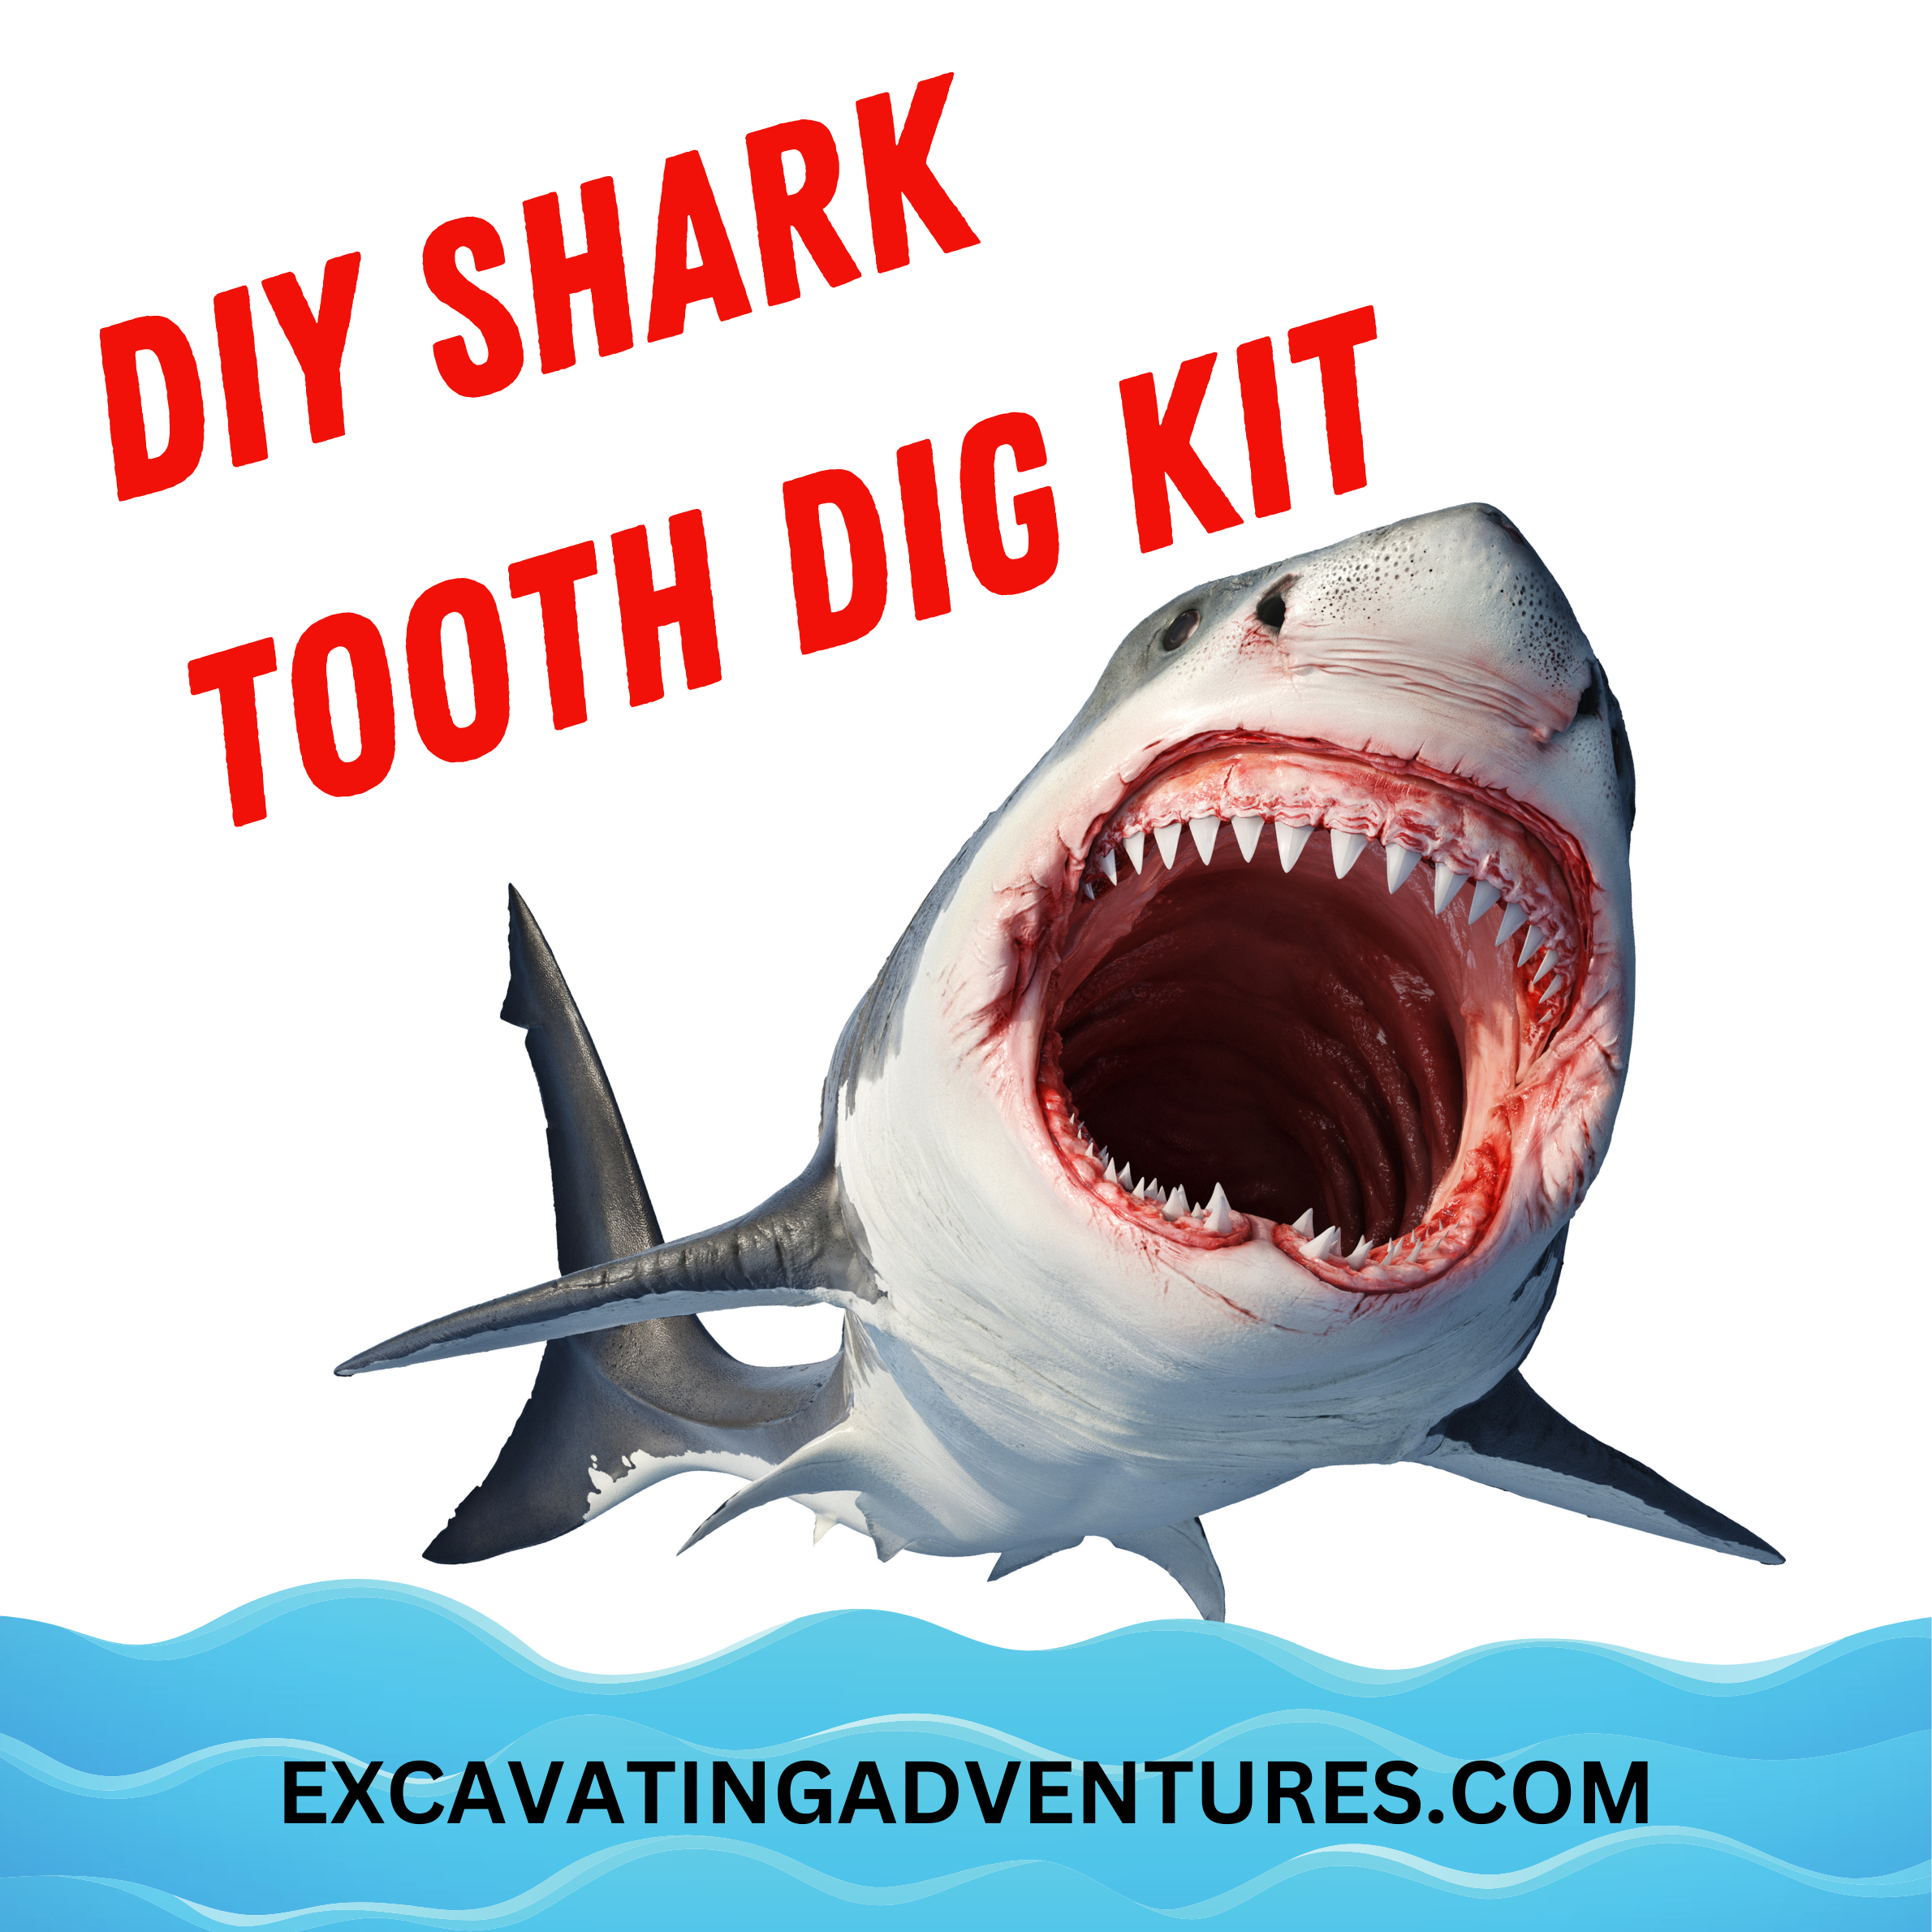 DIY Shark Tooth Dig Kit - Excavating Adventures